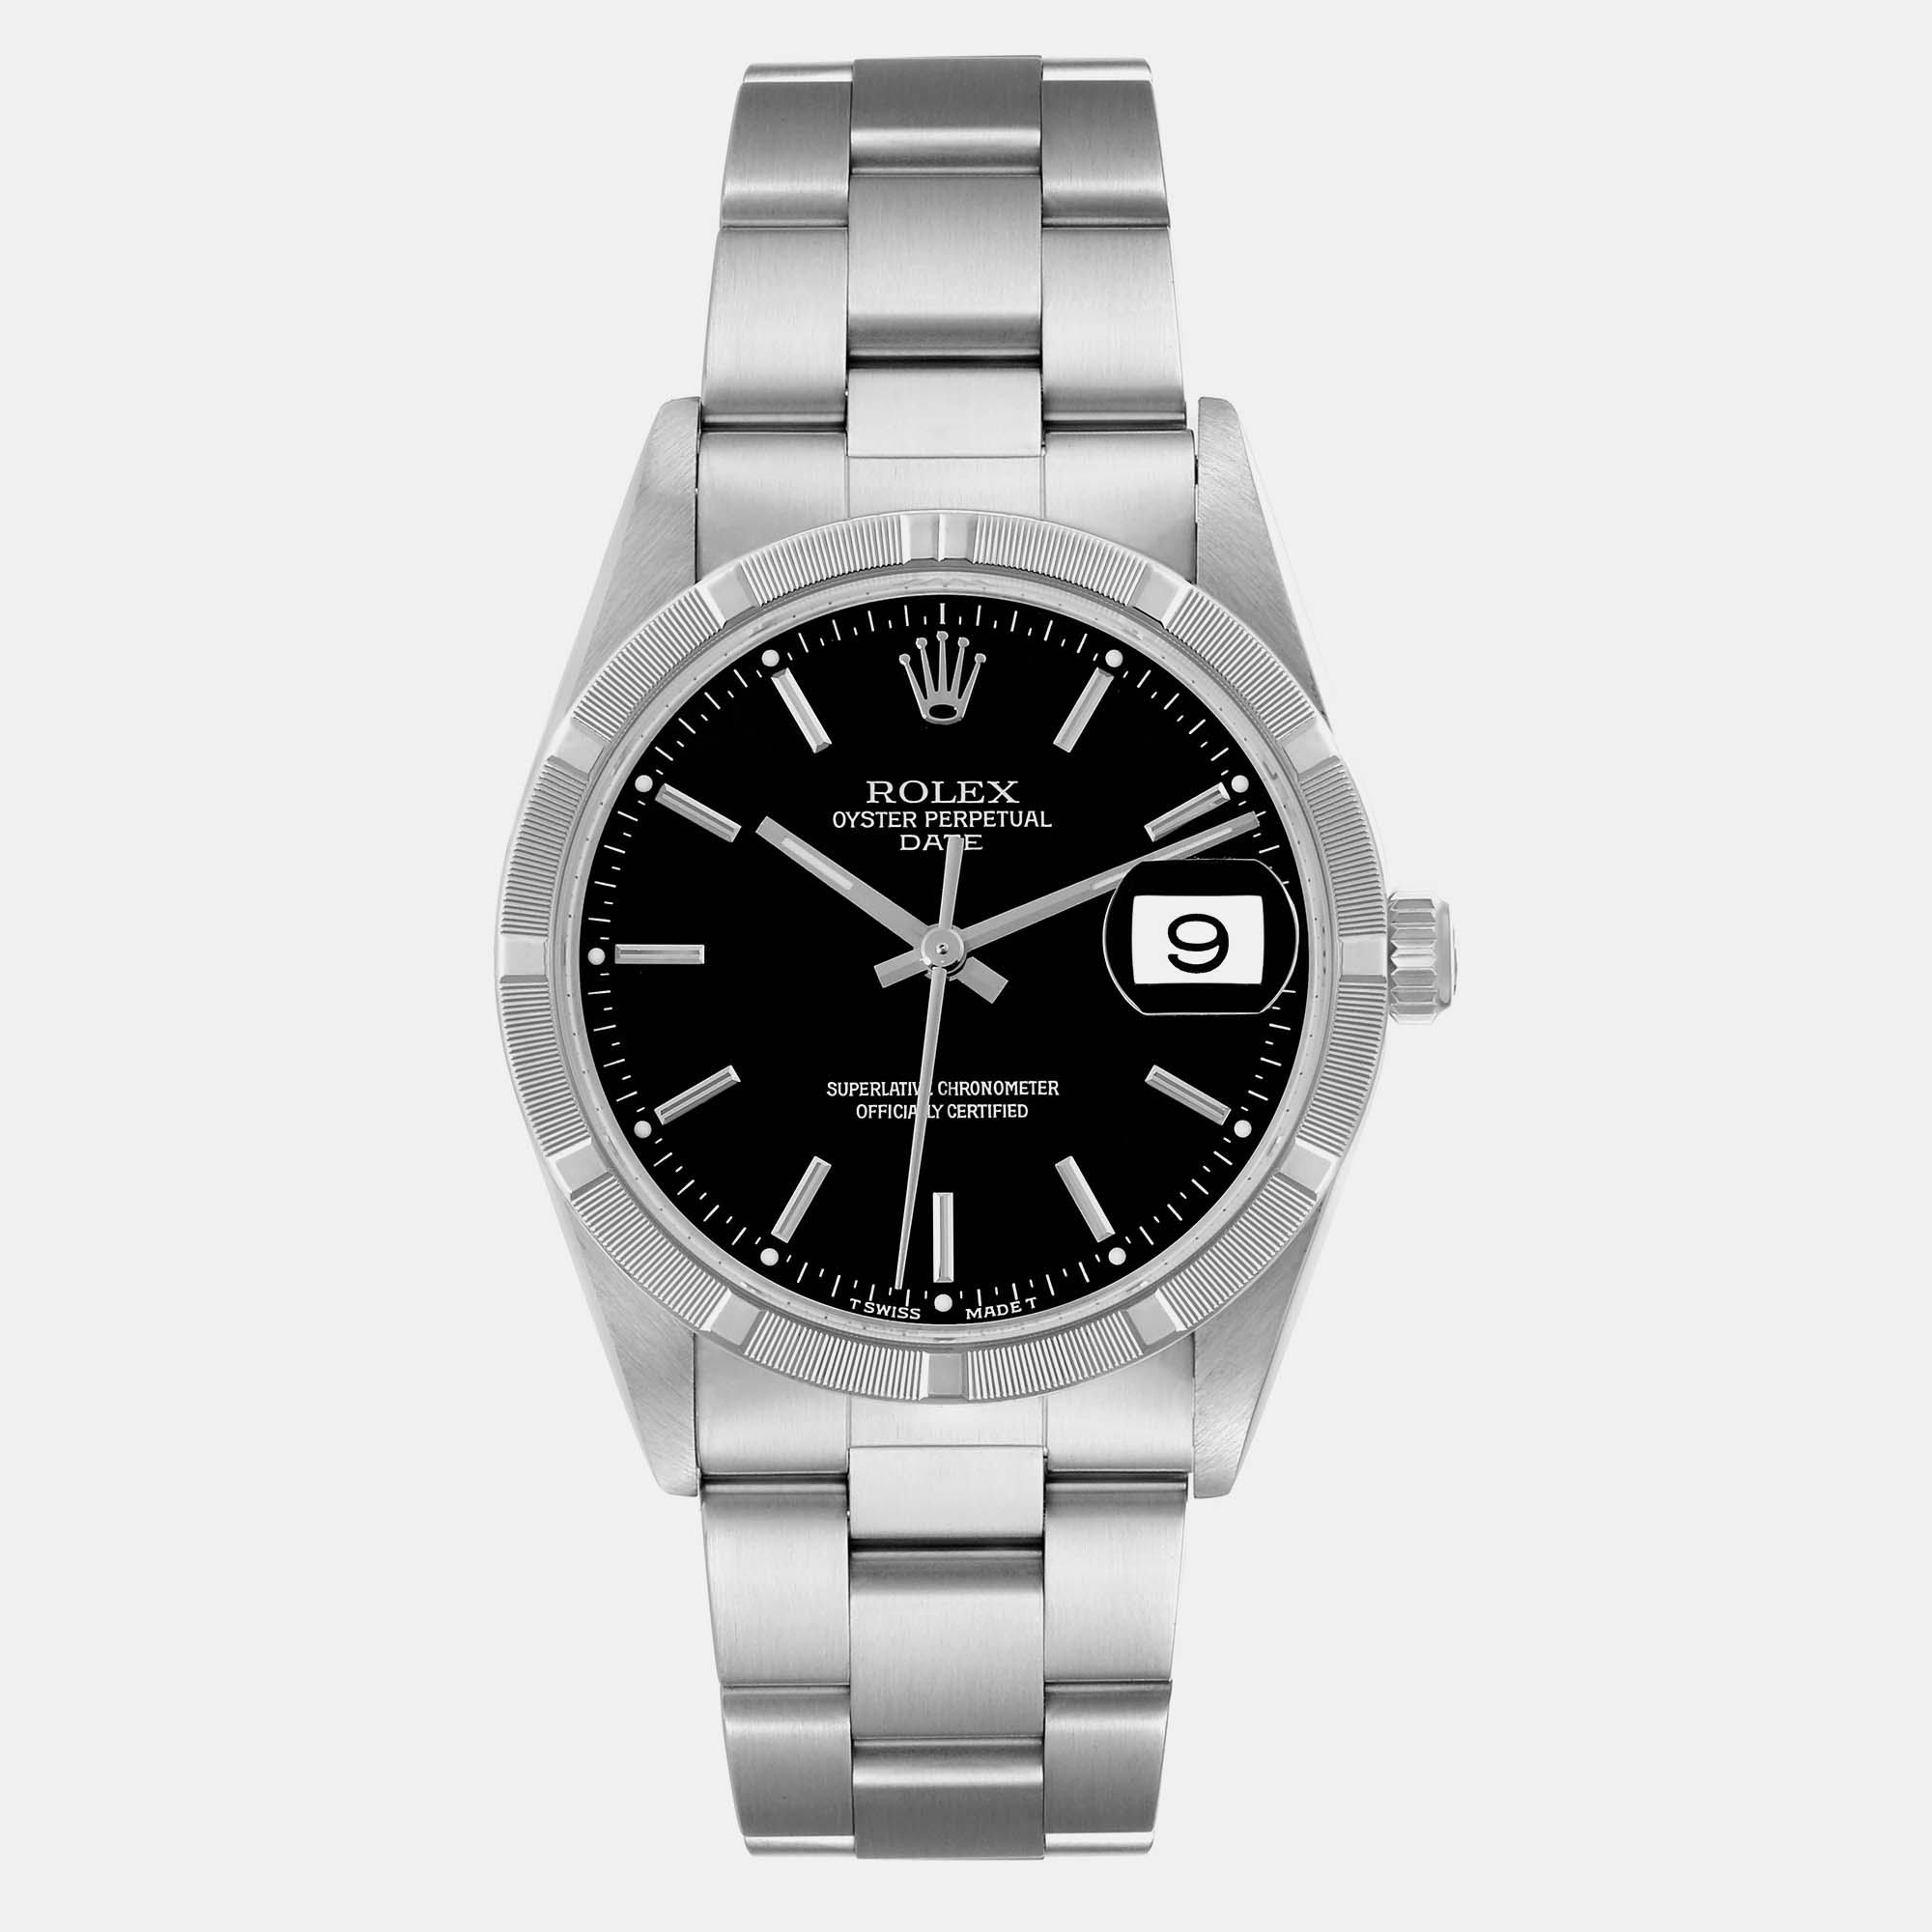 Rolex date black dial engine turned bezel steel men's watch 34 mm